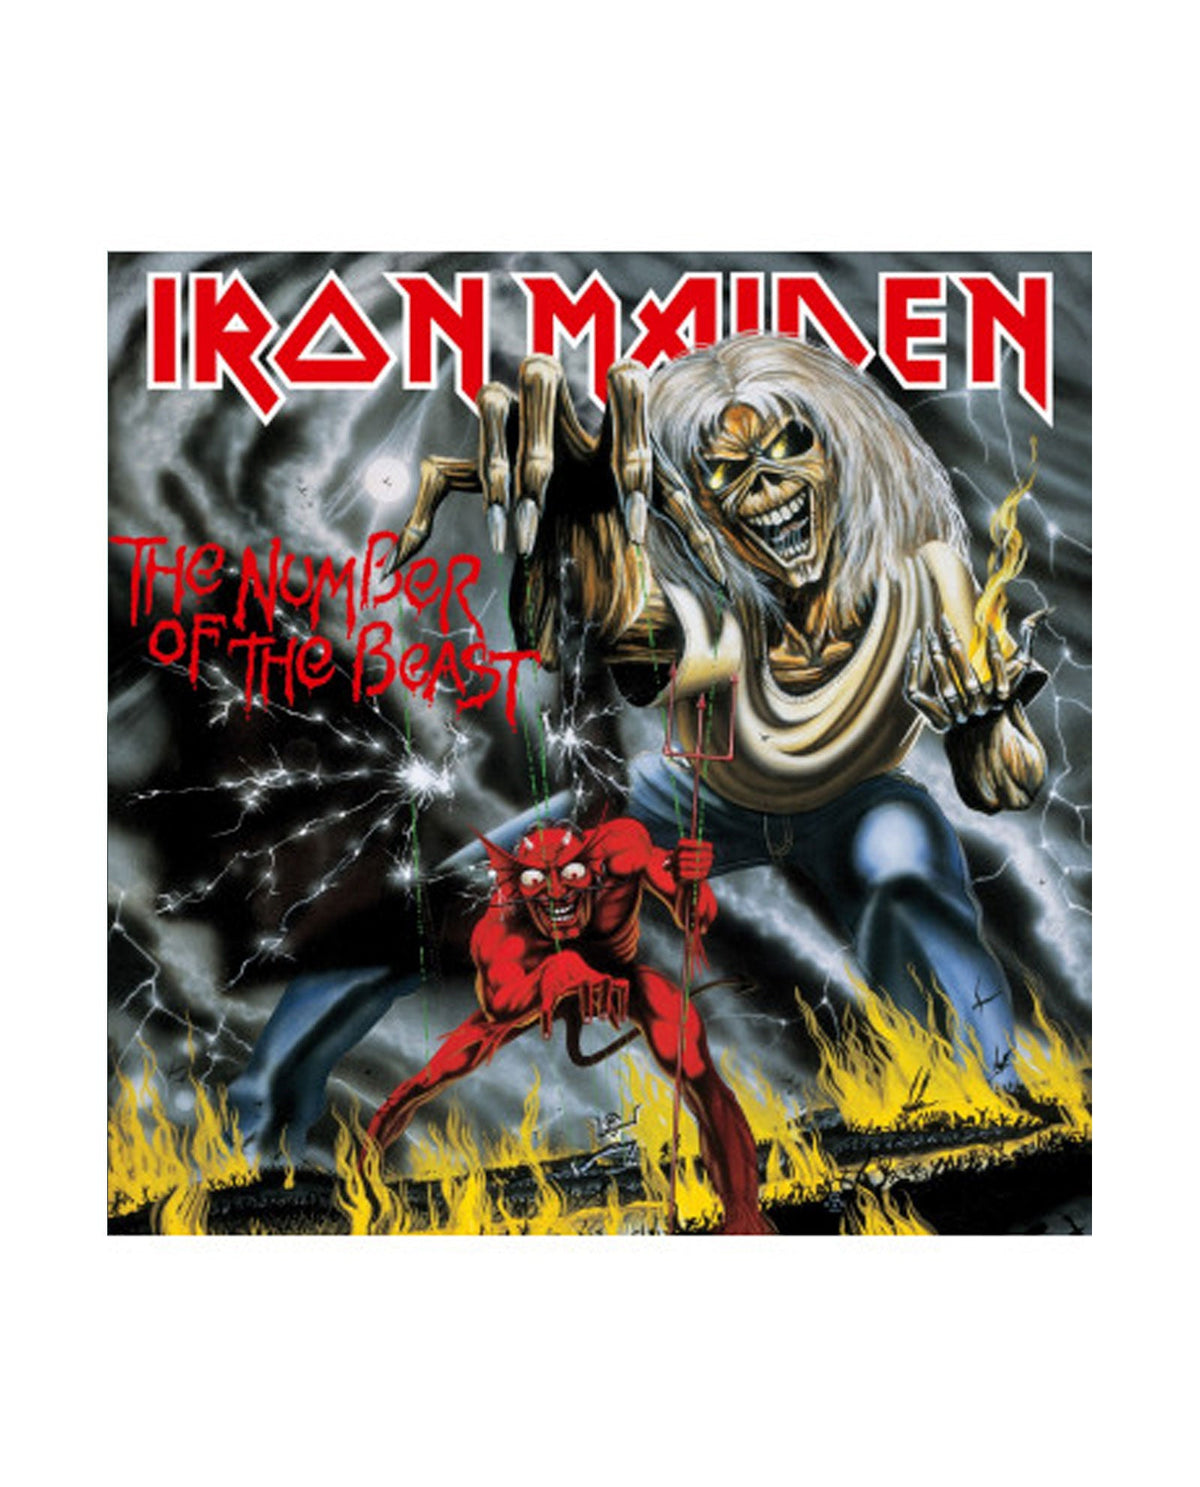 Iron Maiden - LP Vinilo "The number of the beast" - D2fy · Rocktud - Rocktud